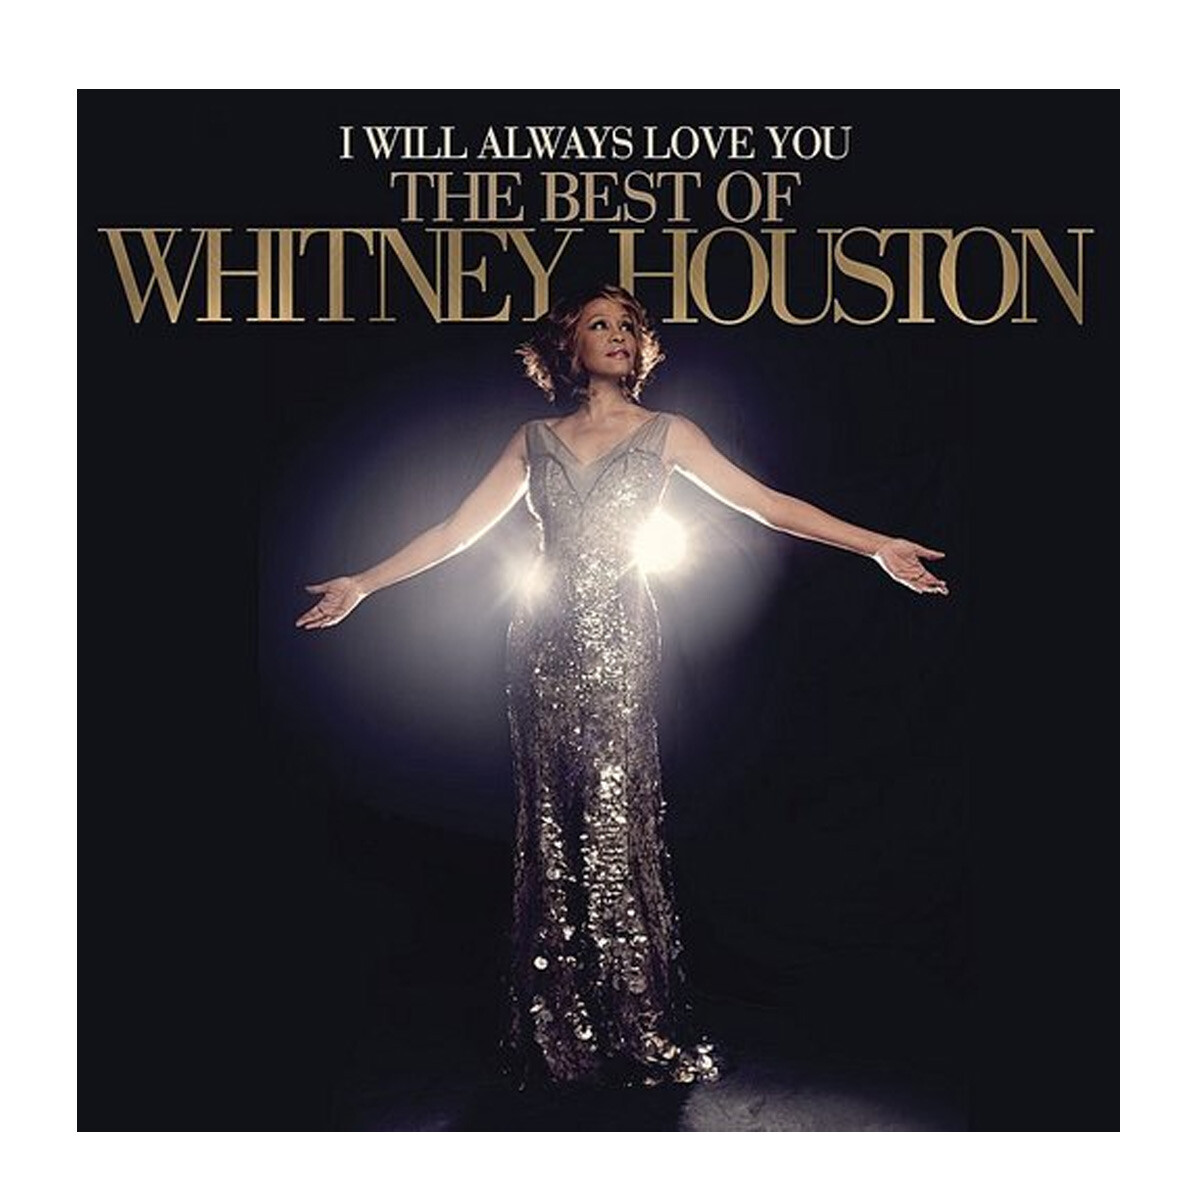 Houston, Whitney - I Will Always Love You - Best Of Whitney Houston - Vinilo 